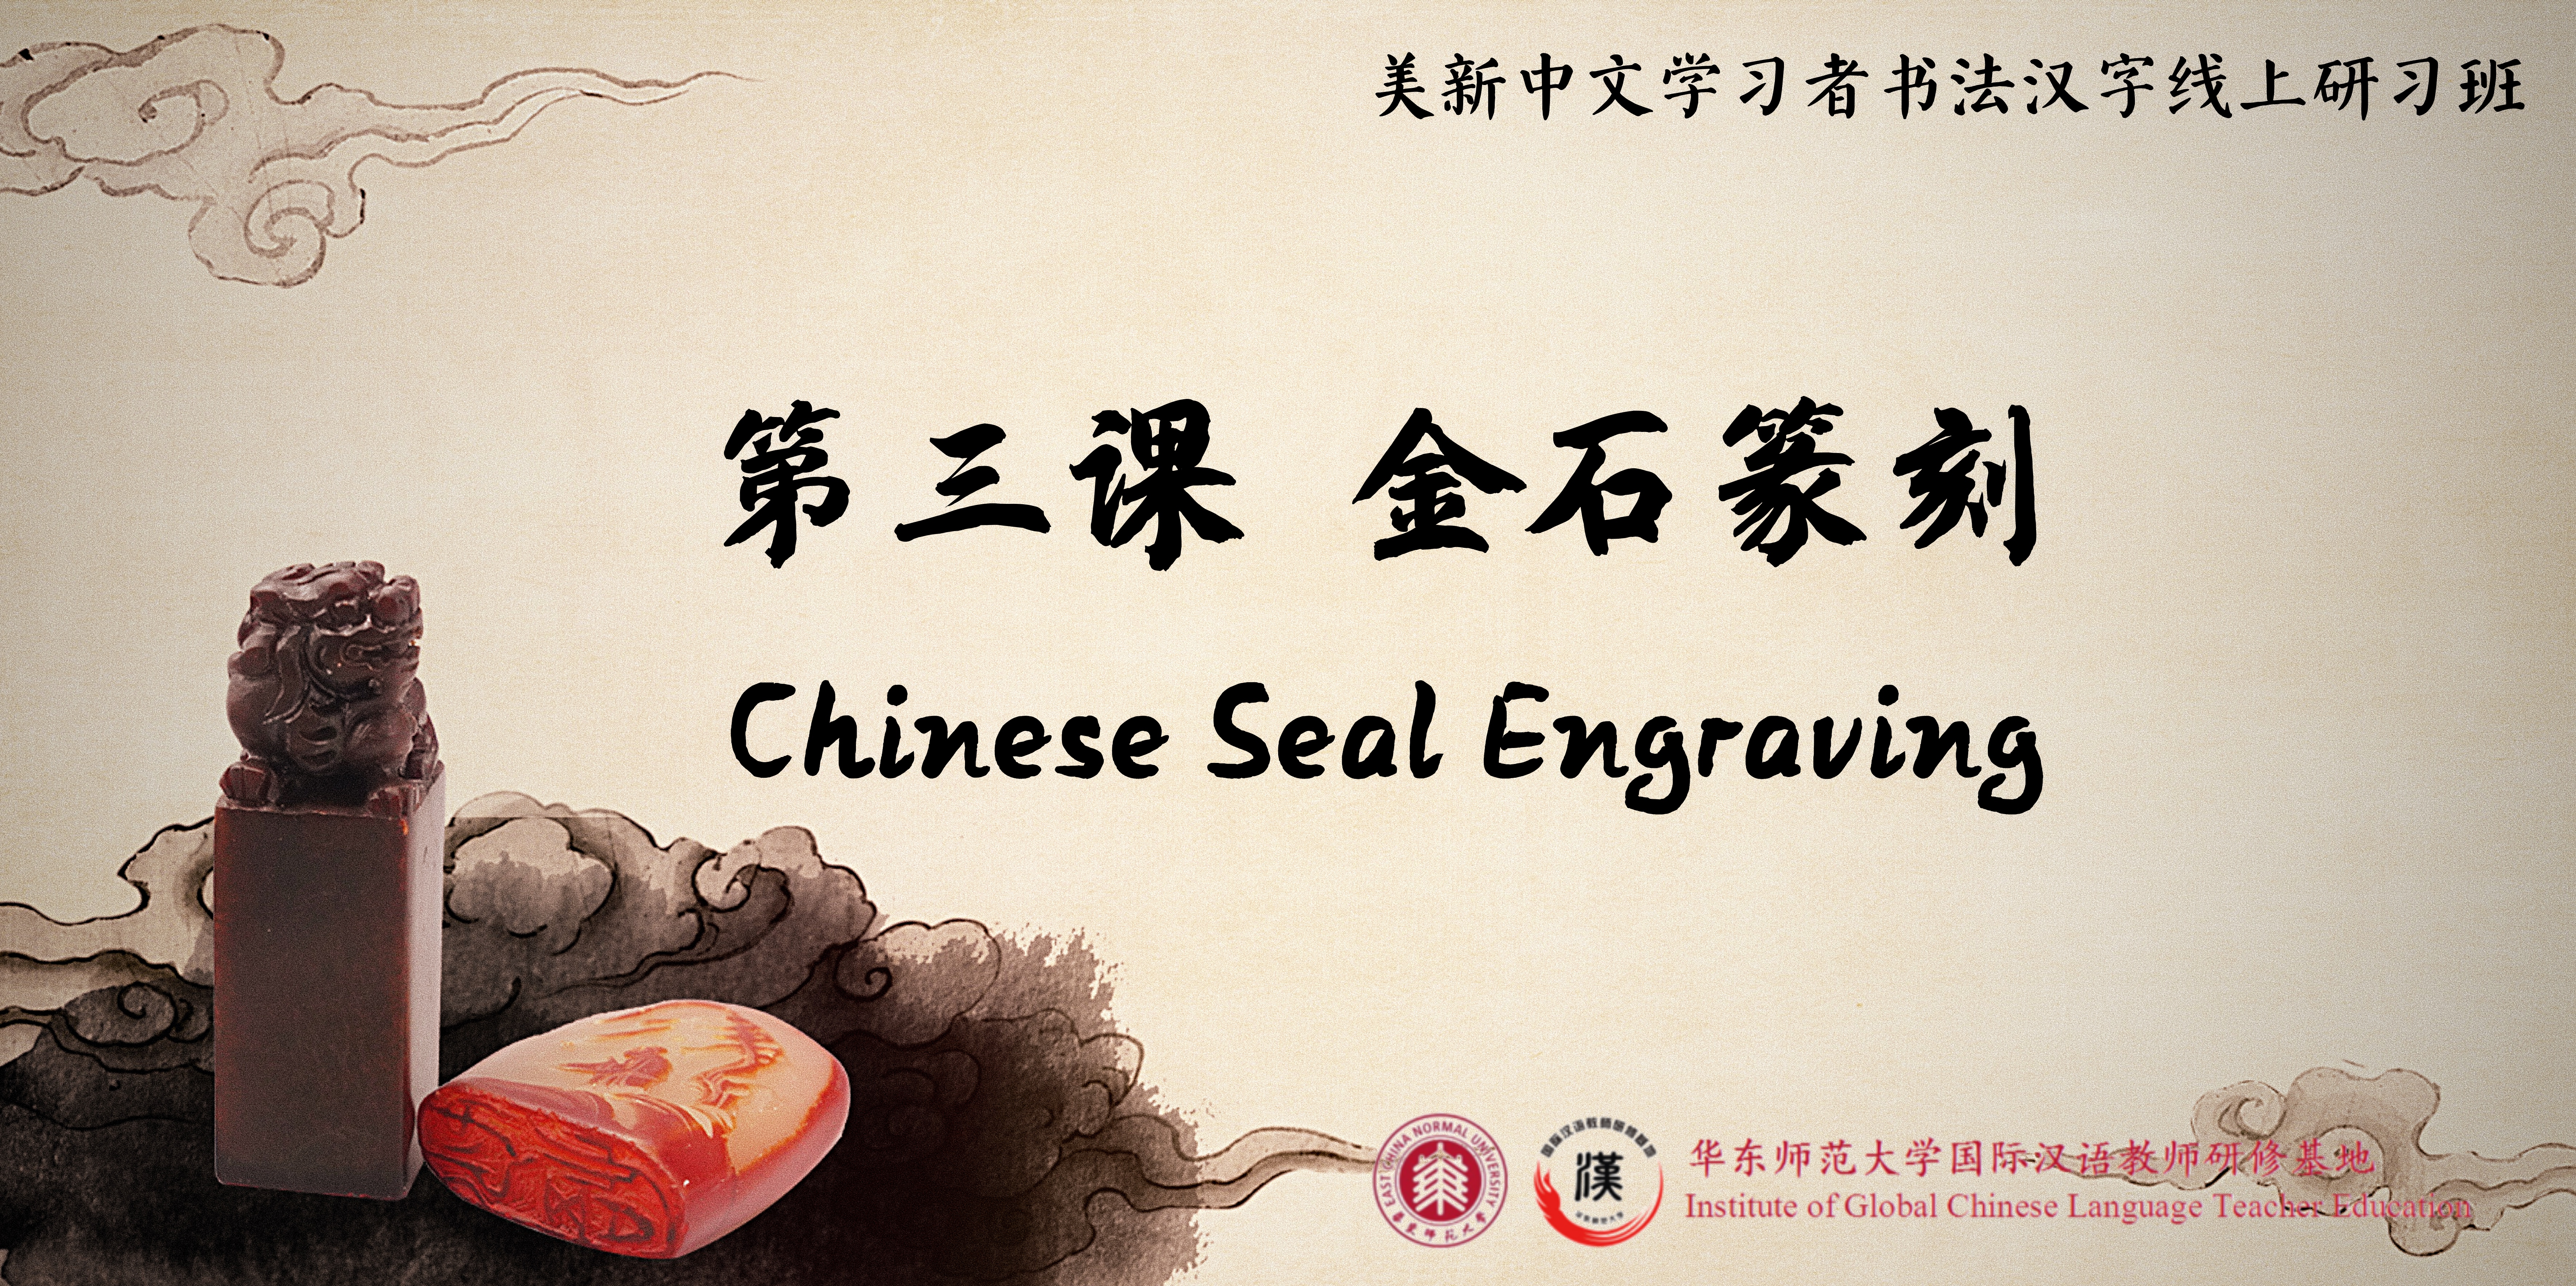 Chinese Seal Engraving